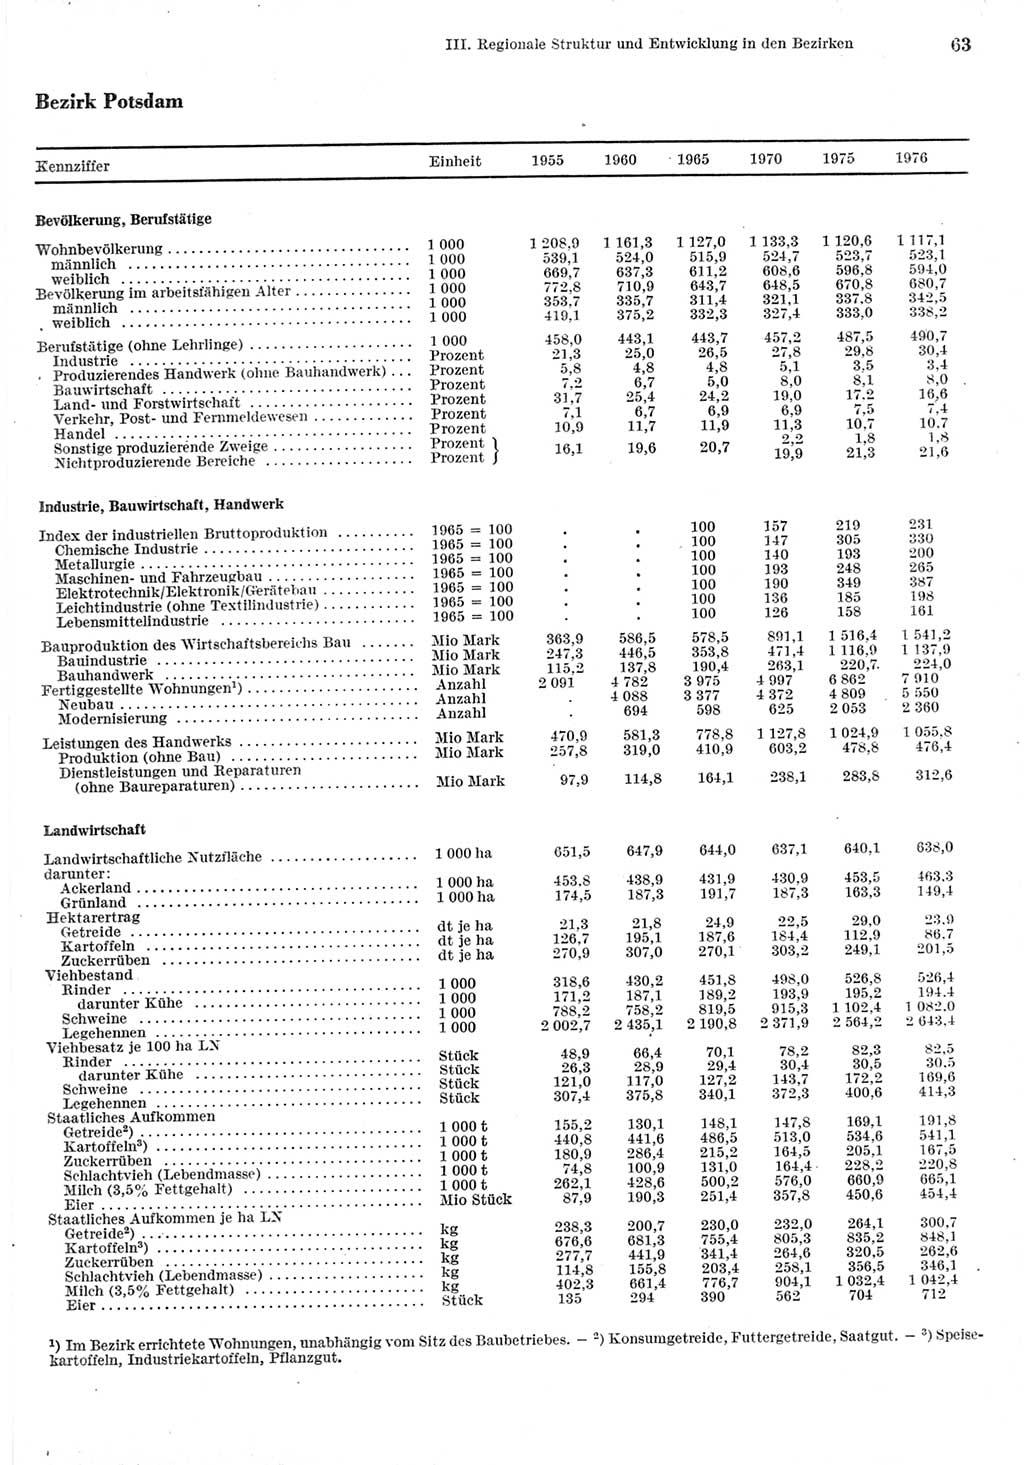 Statistisches Jahrbuch der Deutschen Demokratischen Republik (DDR) 1977, Seite 63 (Stat. Jb. DDR 1977, S. 63)